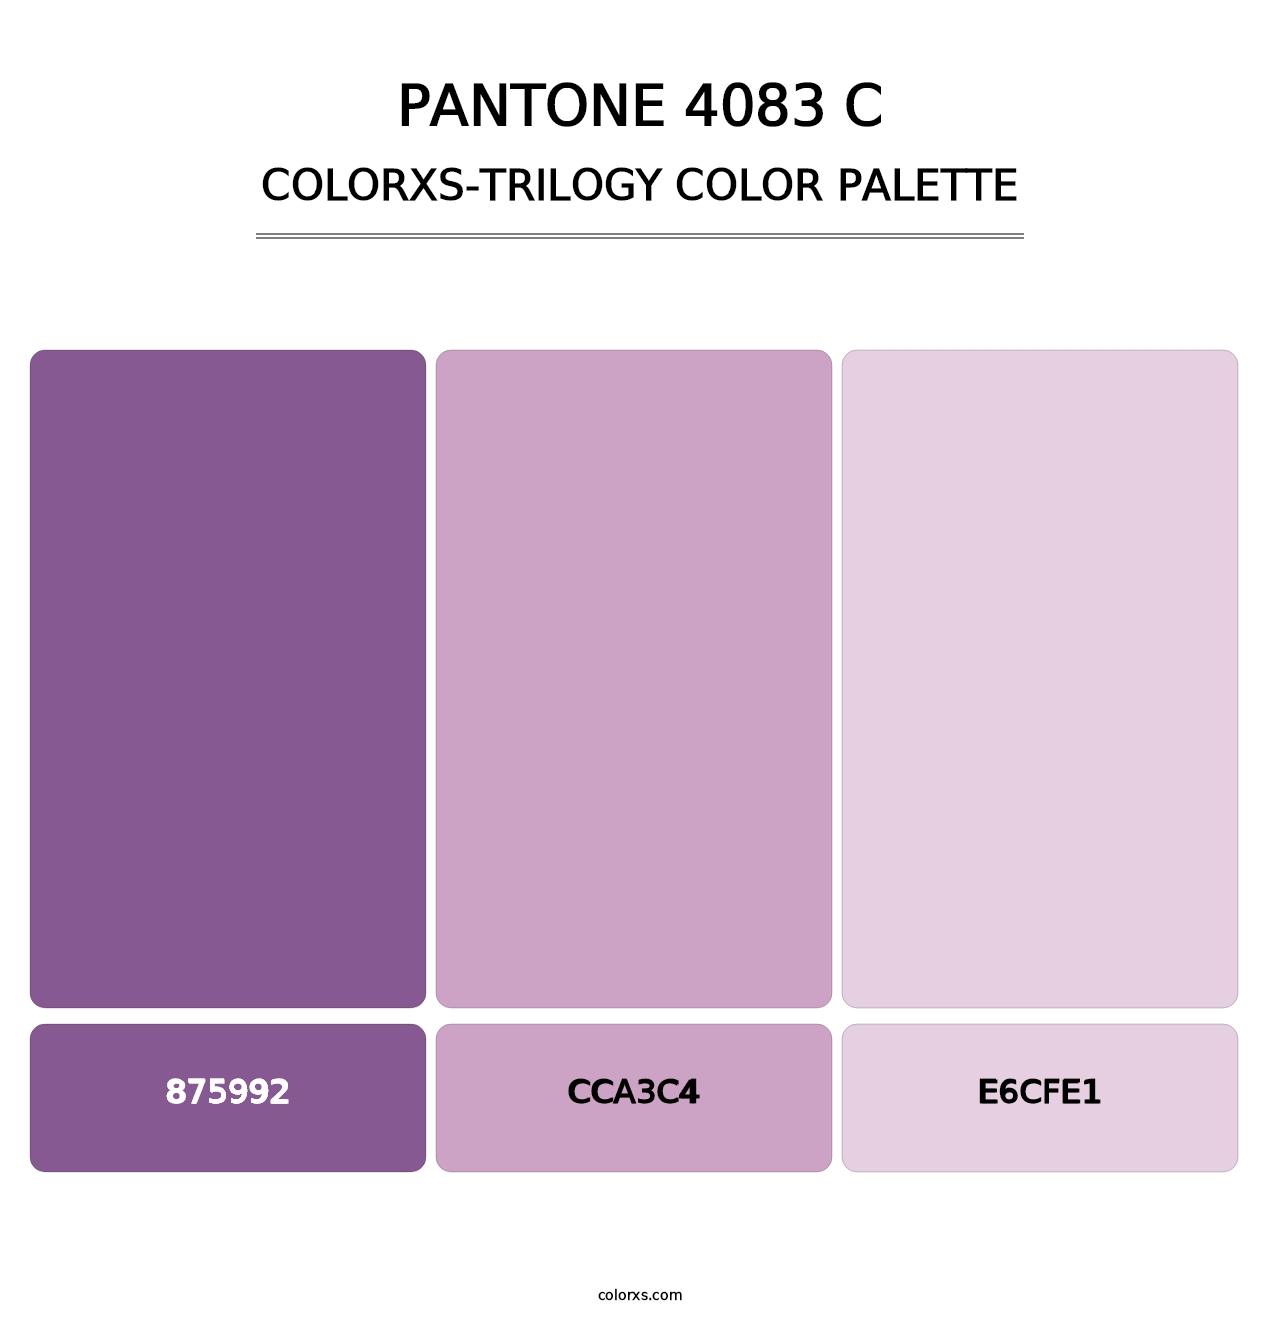 PANTONE 4083 C - Colorxs Trilogy Palette